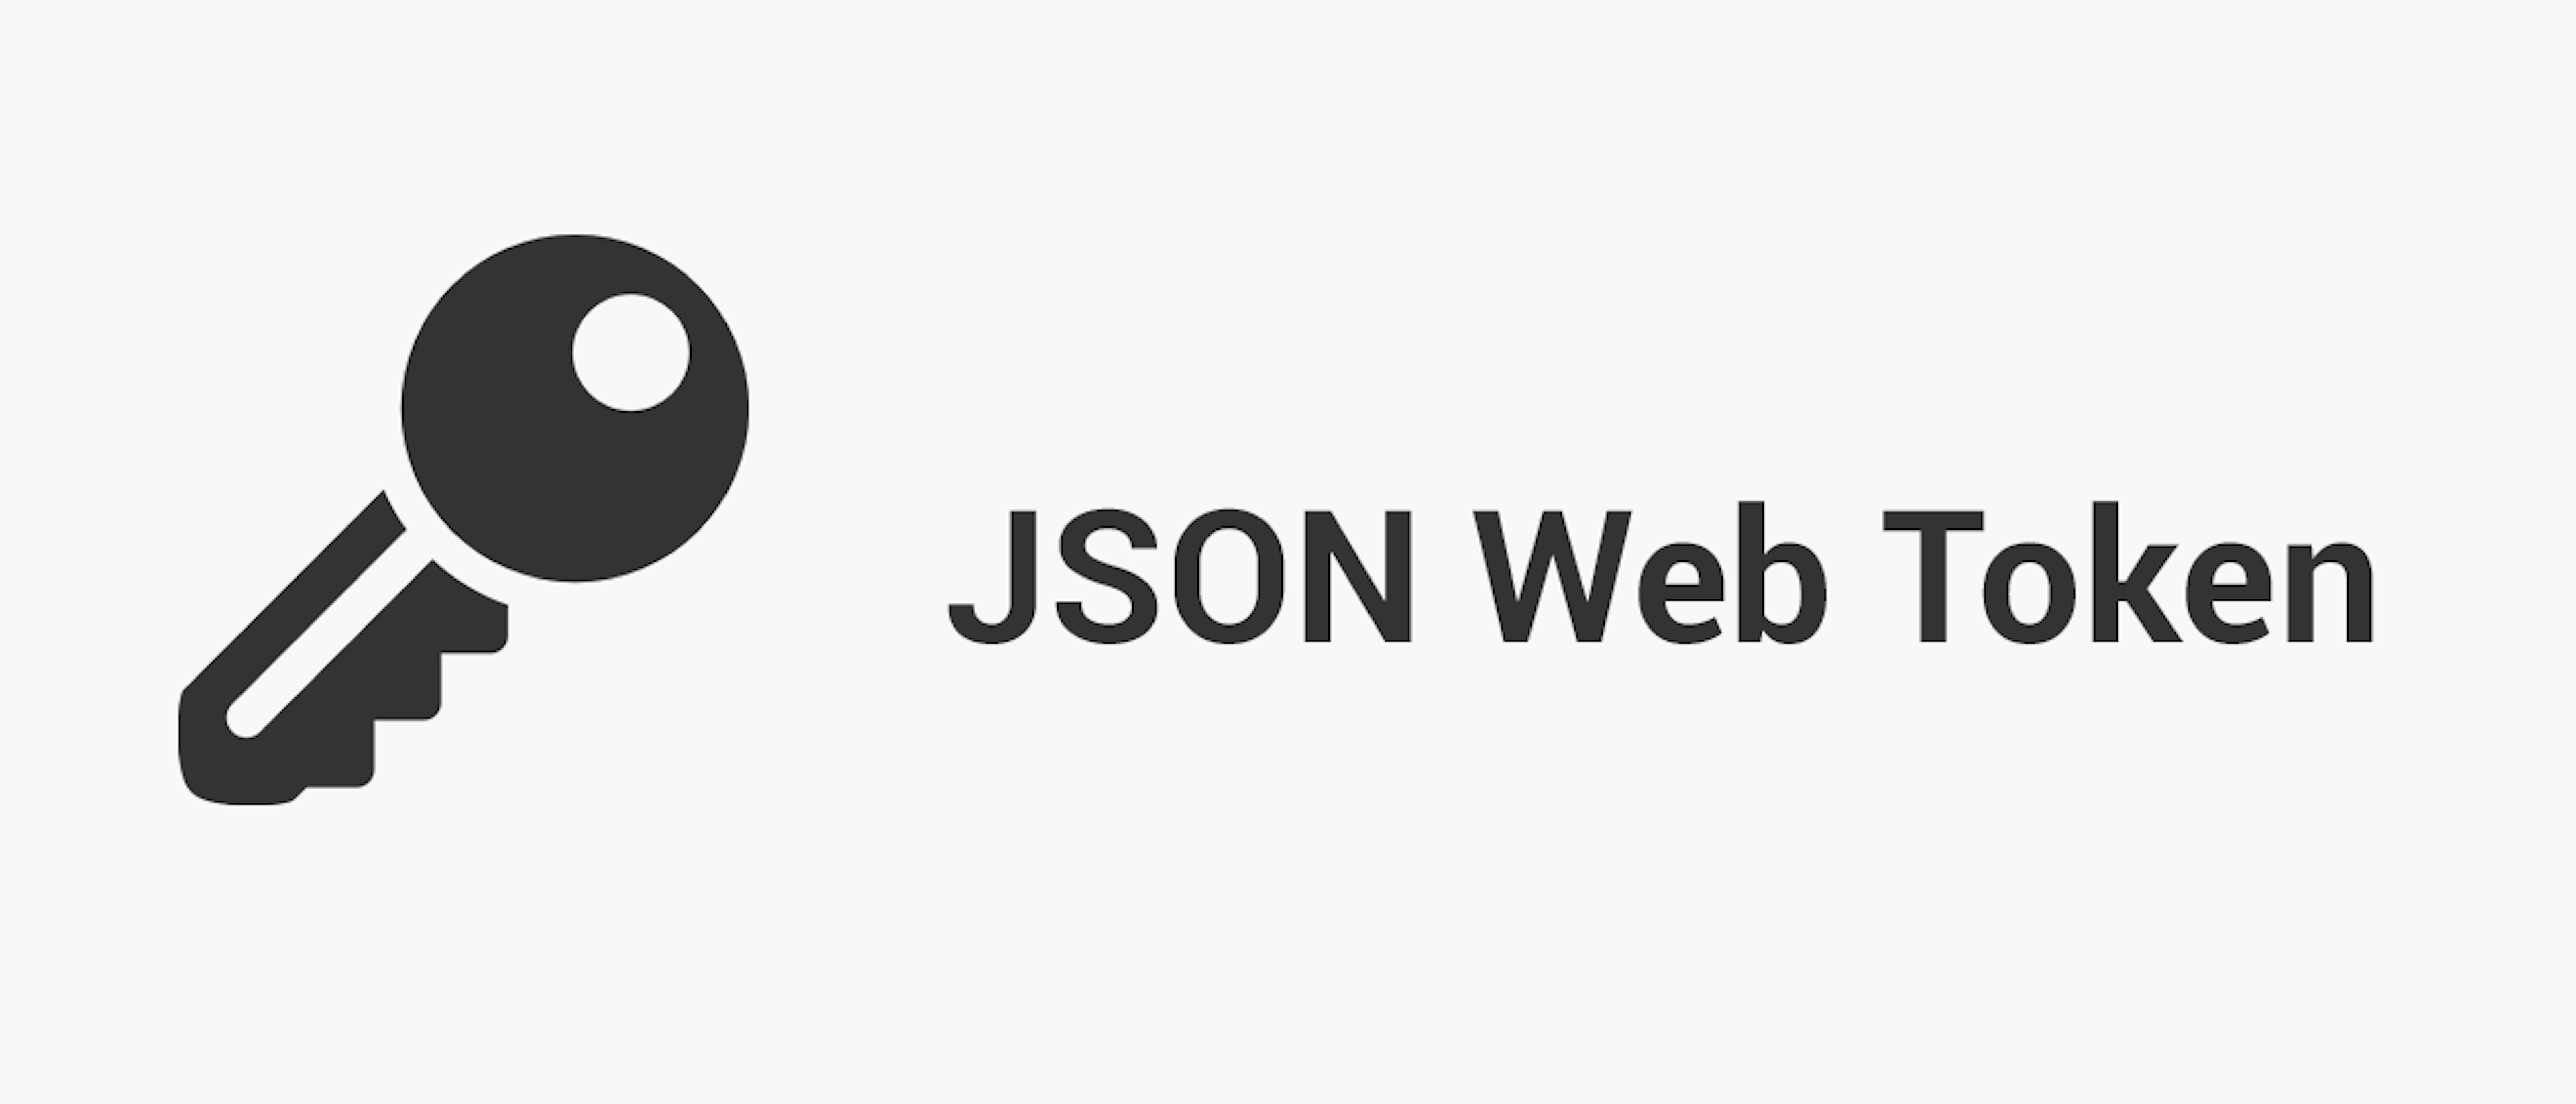 Einsatz von JSON Web Token für die Authentifikation in Webanwendungen